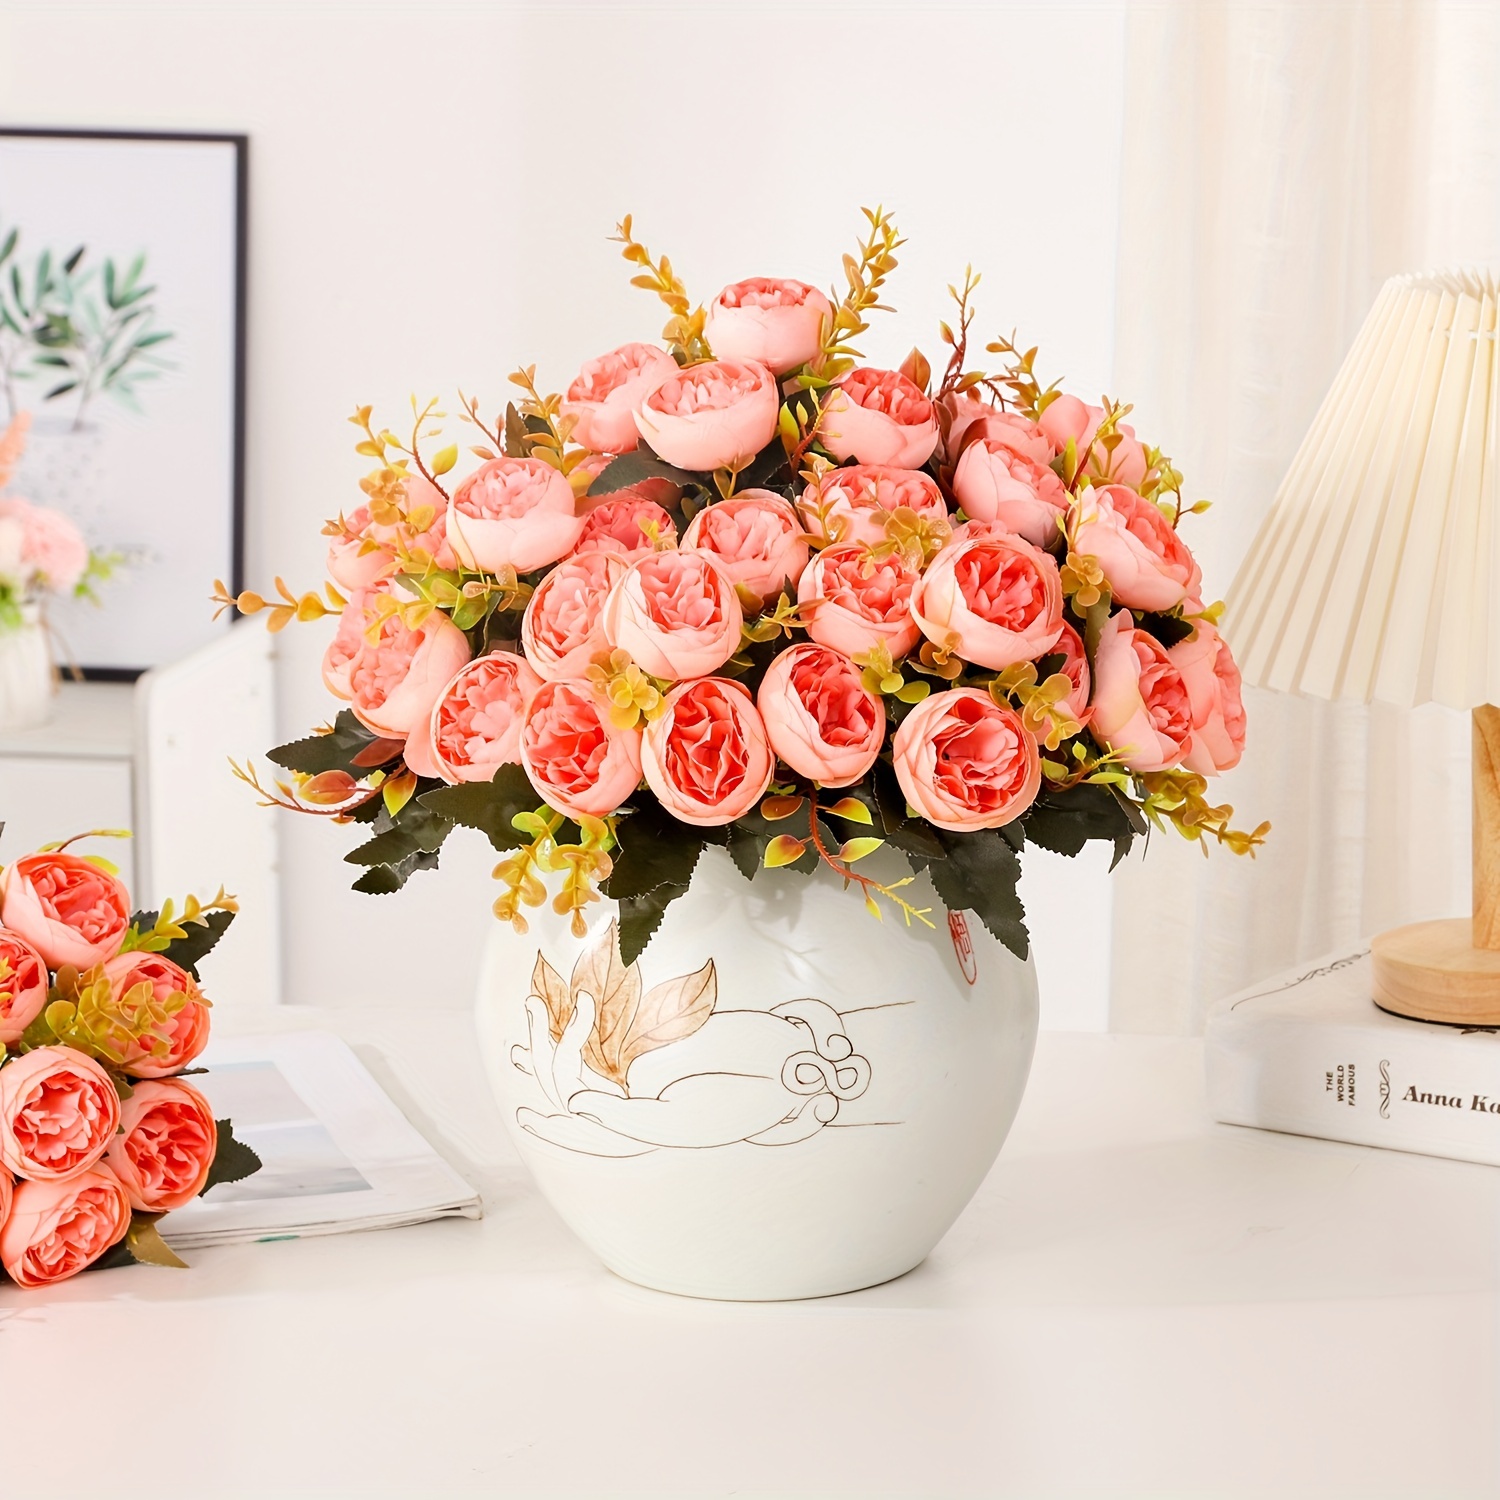 XONOR 4 flores de hortensias artificiales en maceta, flores de hortensias  falsas en maceta de plástico para decoración del hogar, fiesta, oficina